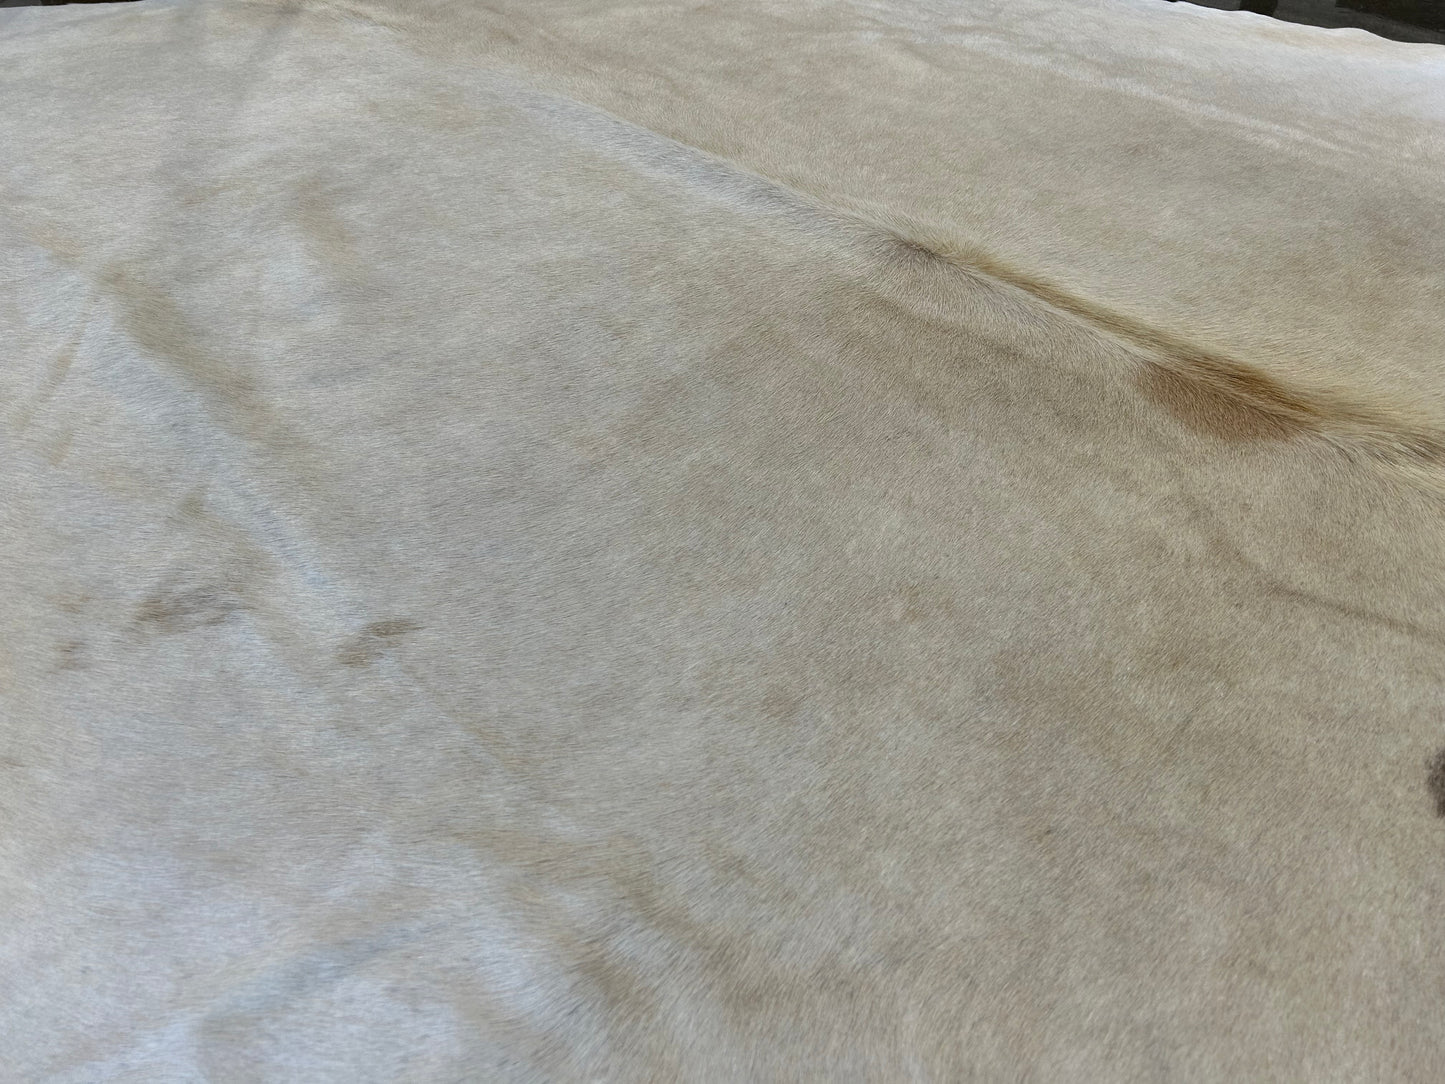 LL-7: Cowhide rug - Very large ivory / beige